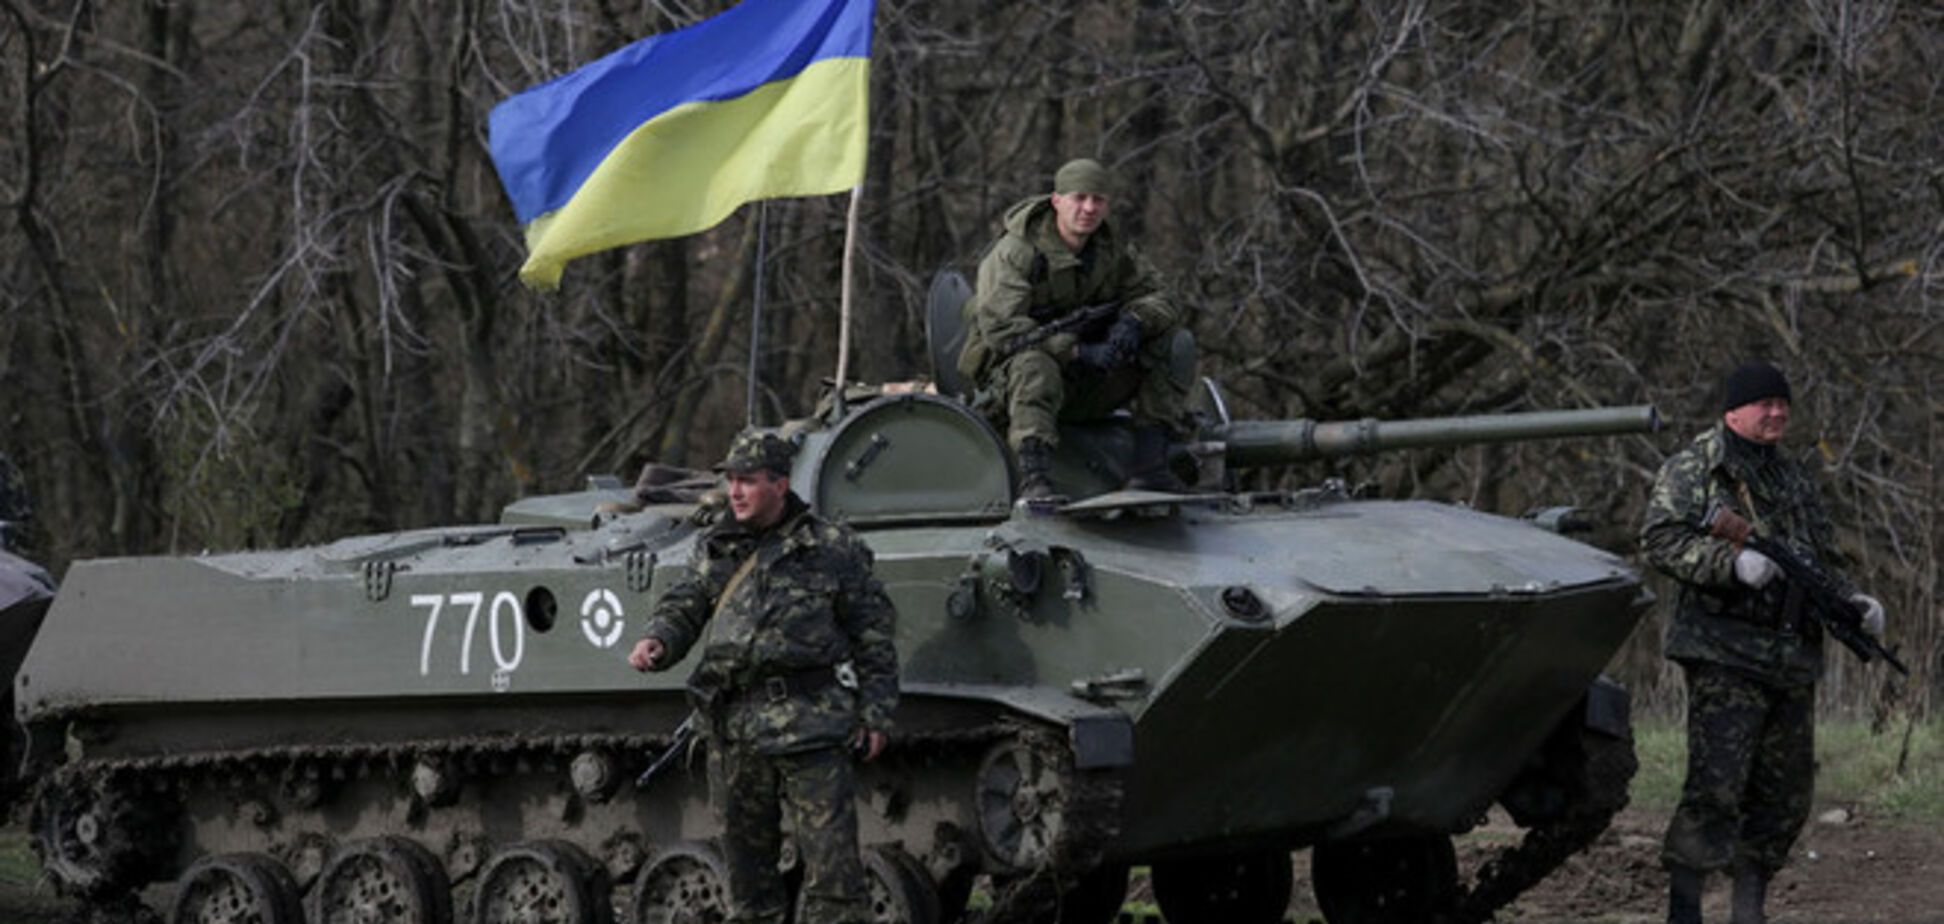 Мирні мешканці Донецька за 5 тис. грн здавали бойовикам координати розташування армії